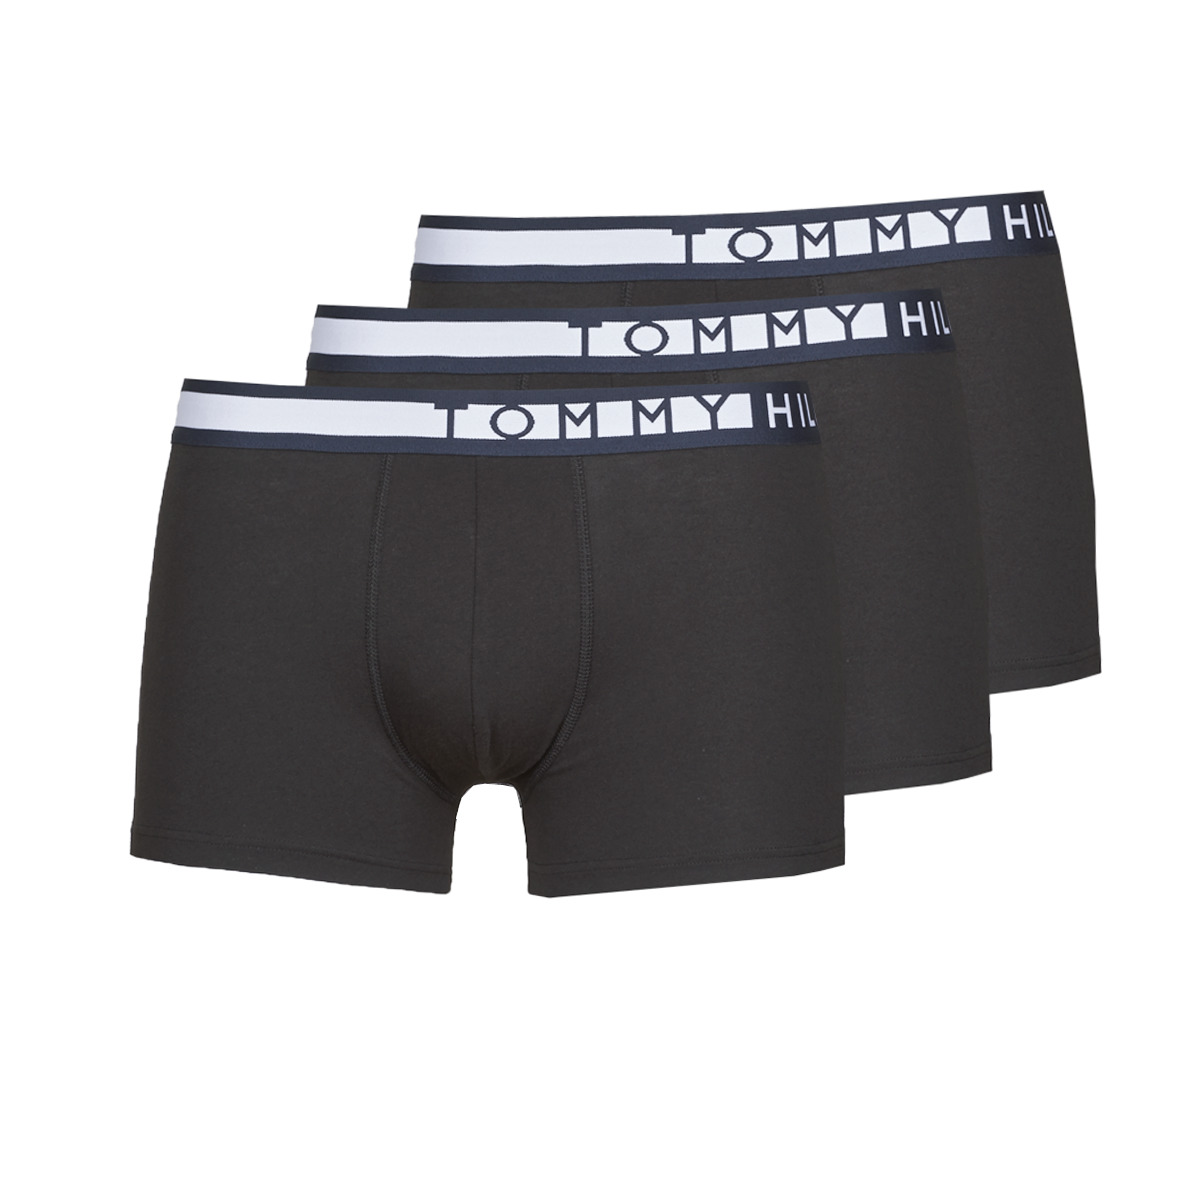 tommy hilfiger logo underwear